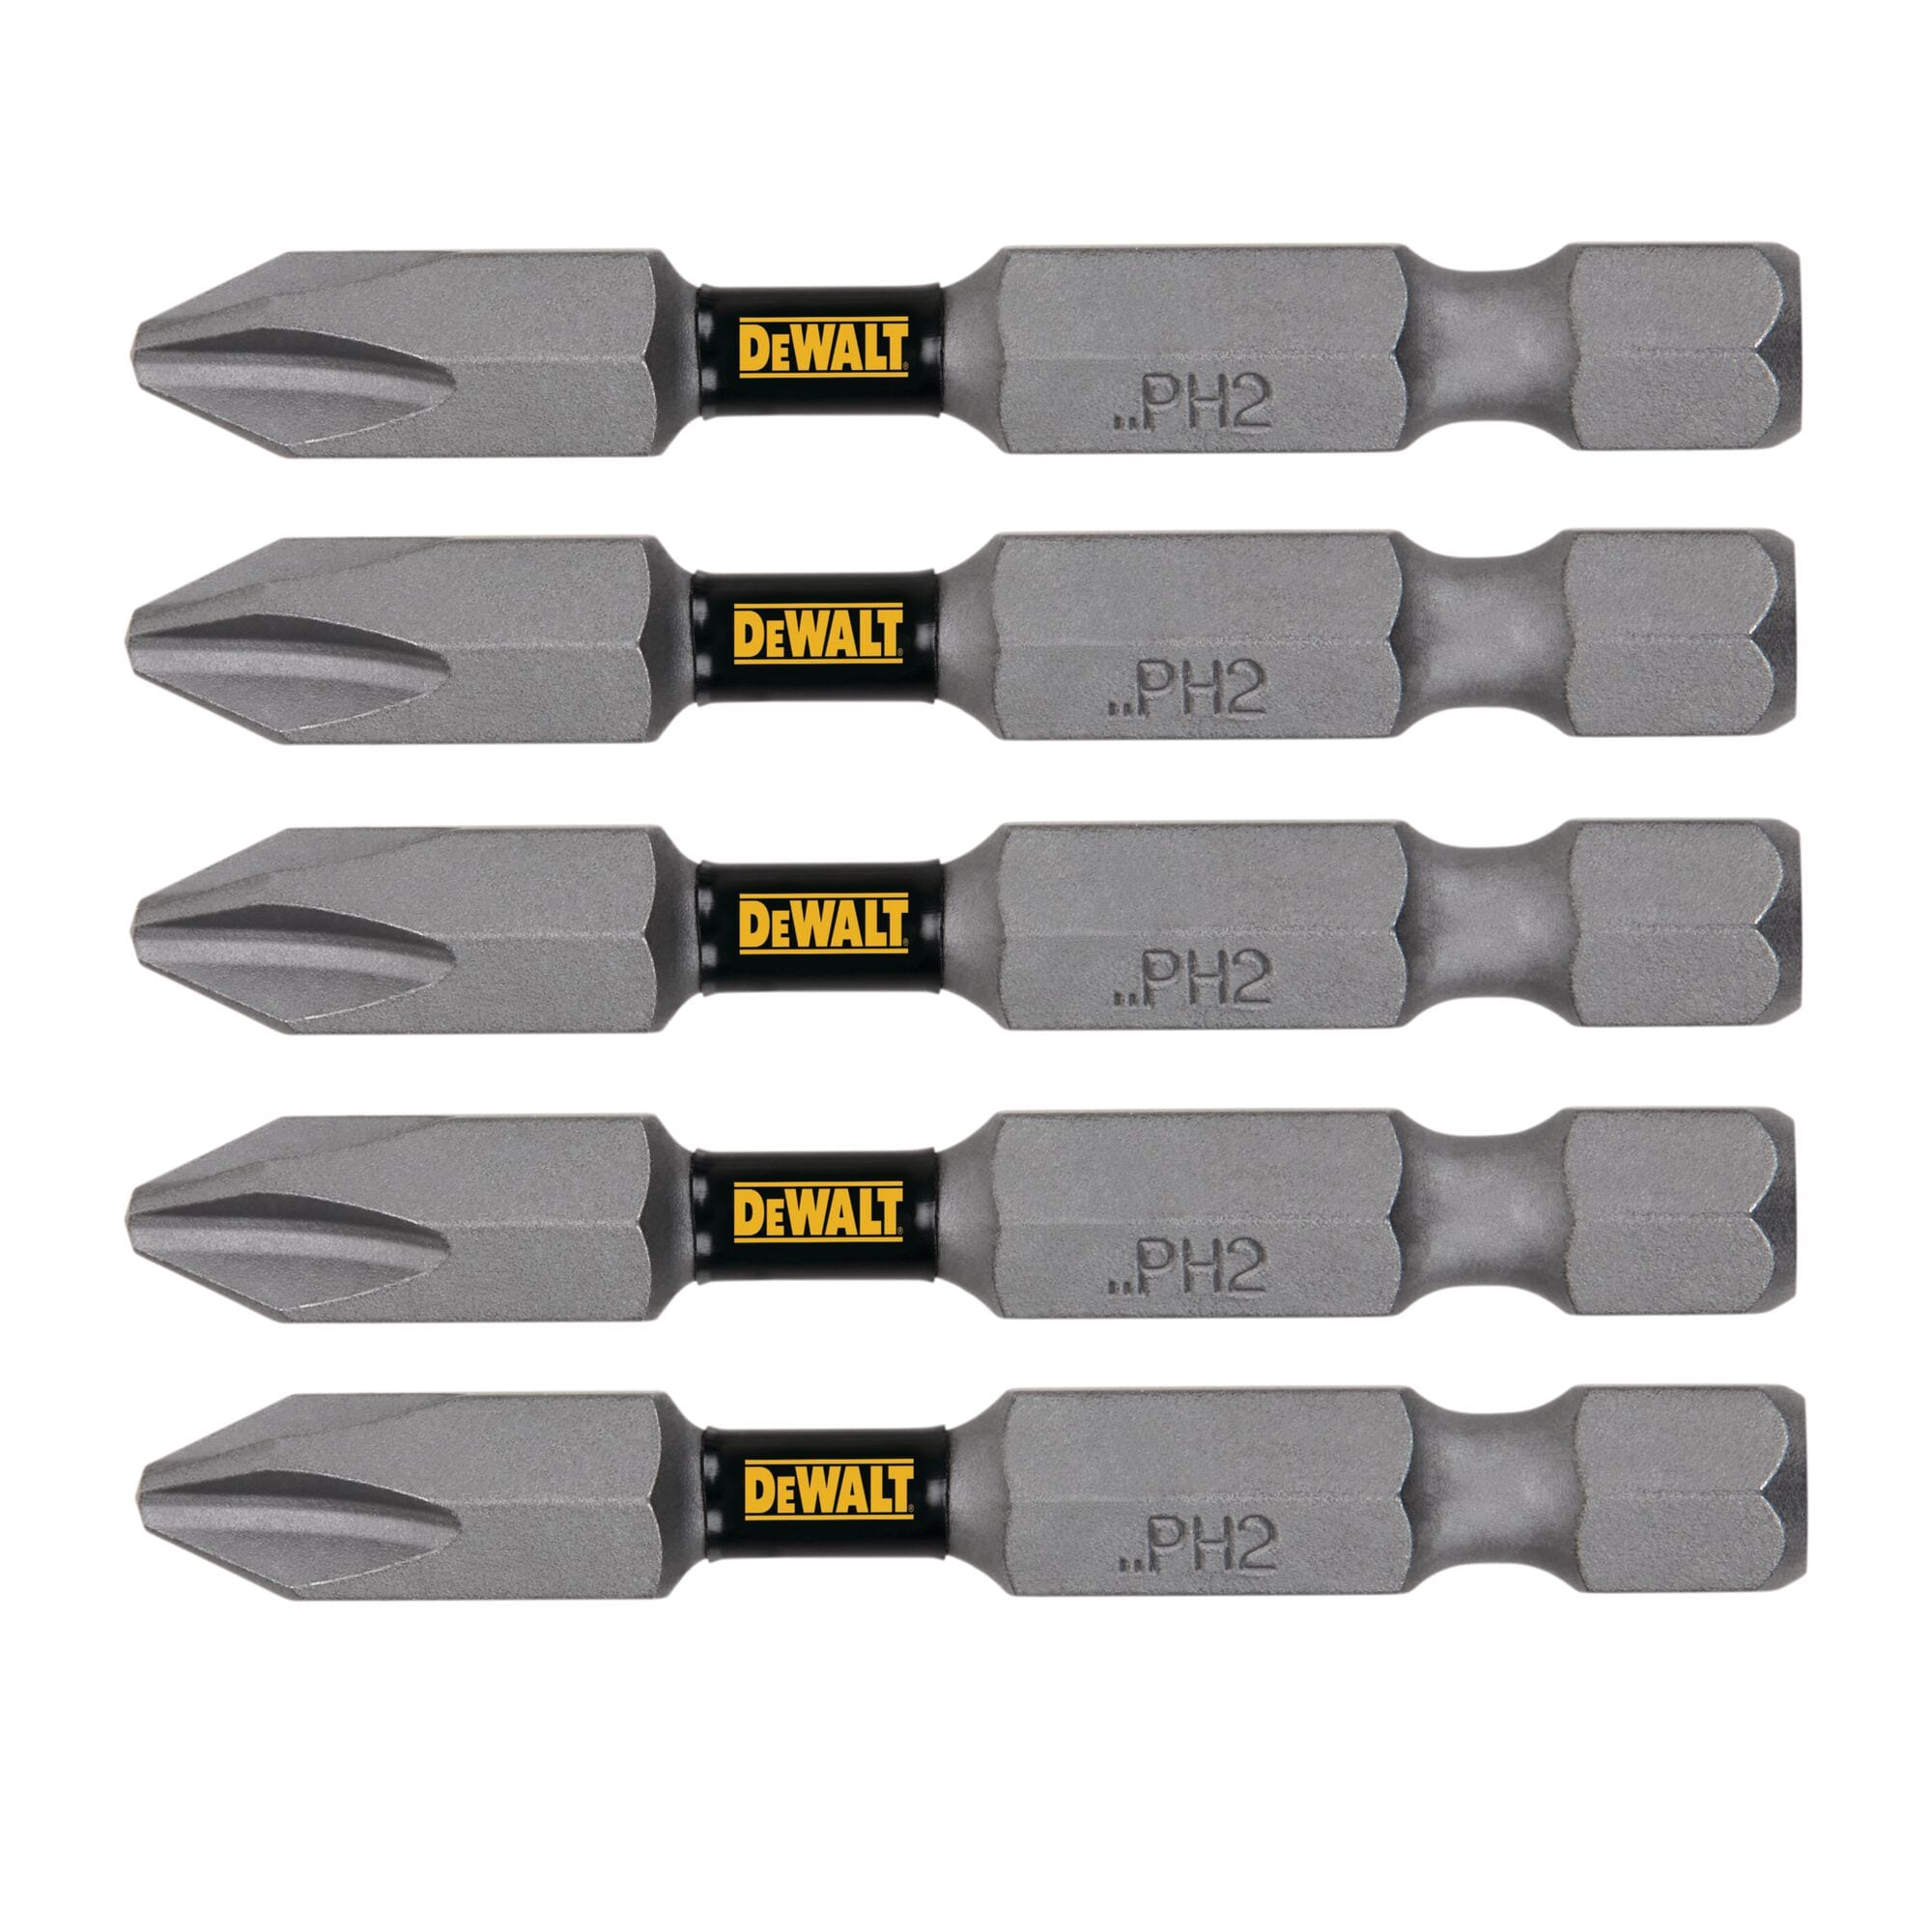 NEW Phillips Screwdriver Bits Set #2 Tip Impact Lock Drill Tool 30pc USA DeWalt